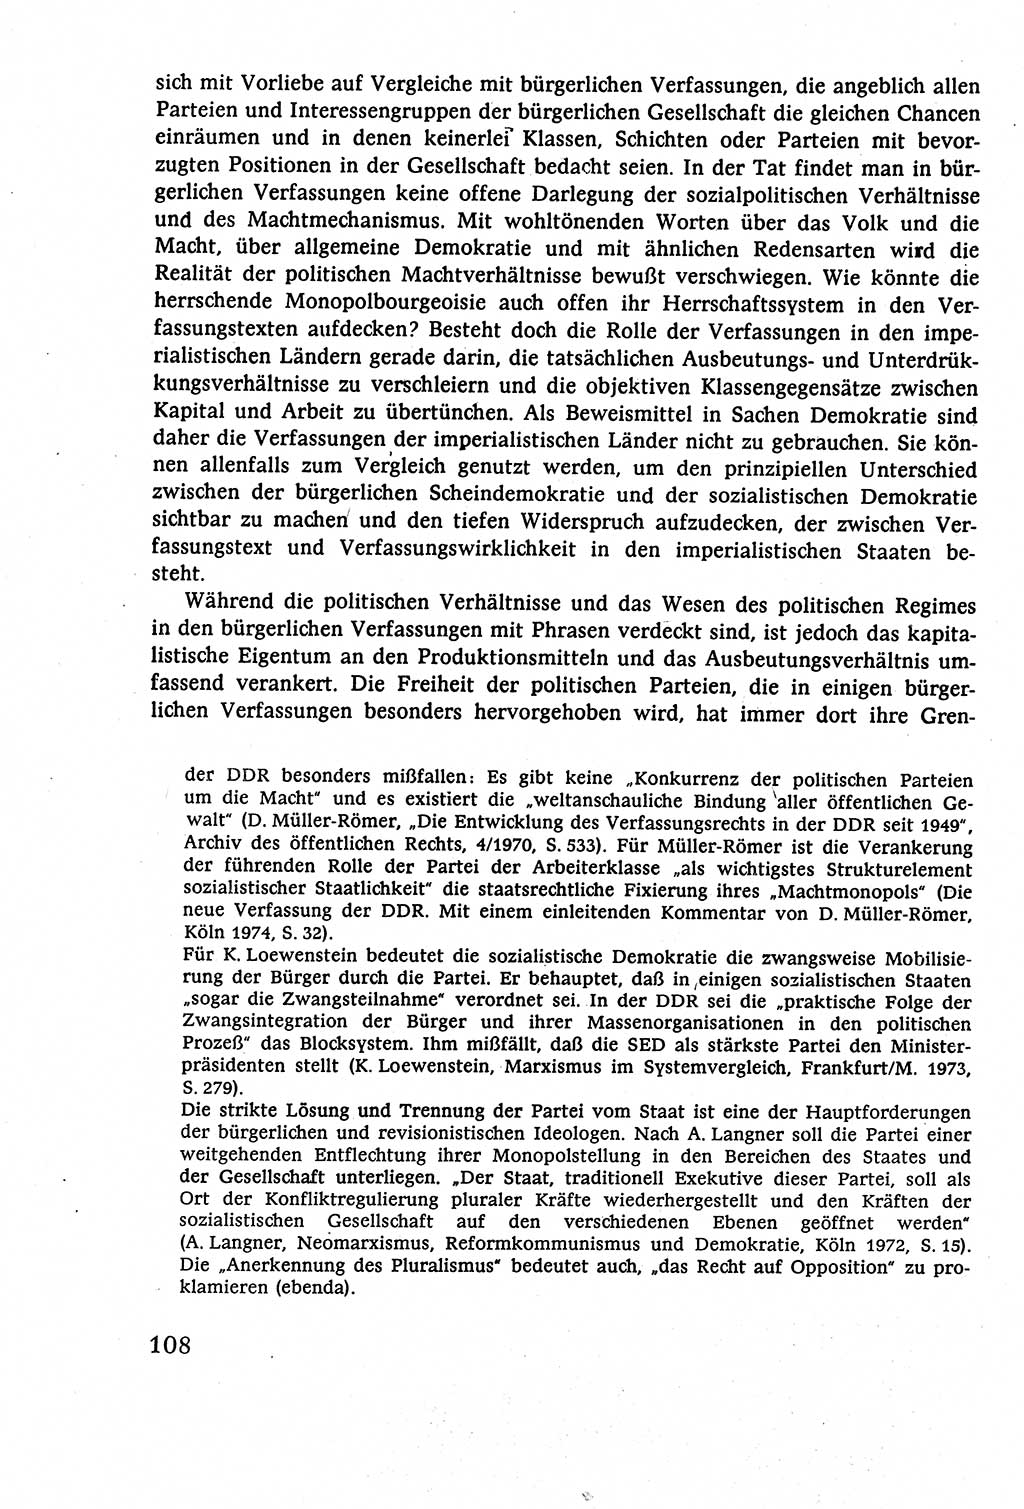 Staatsrecht der DDR (Deutsche Demokratische Republik), Lehrbuch 1977, Seite 108 (St.-R. DDR Lb. 1977, S. 108)